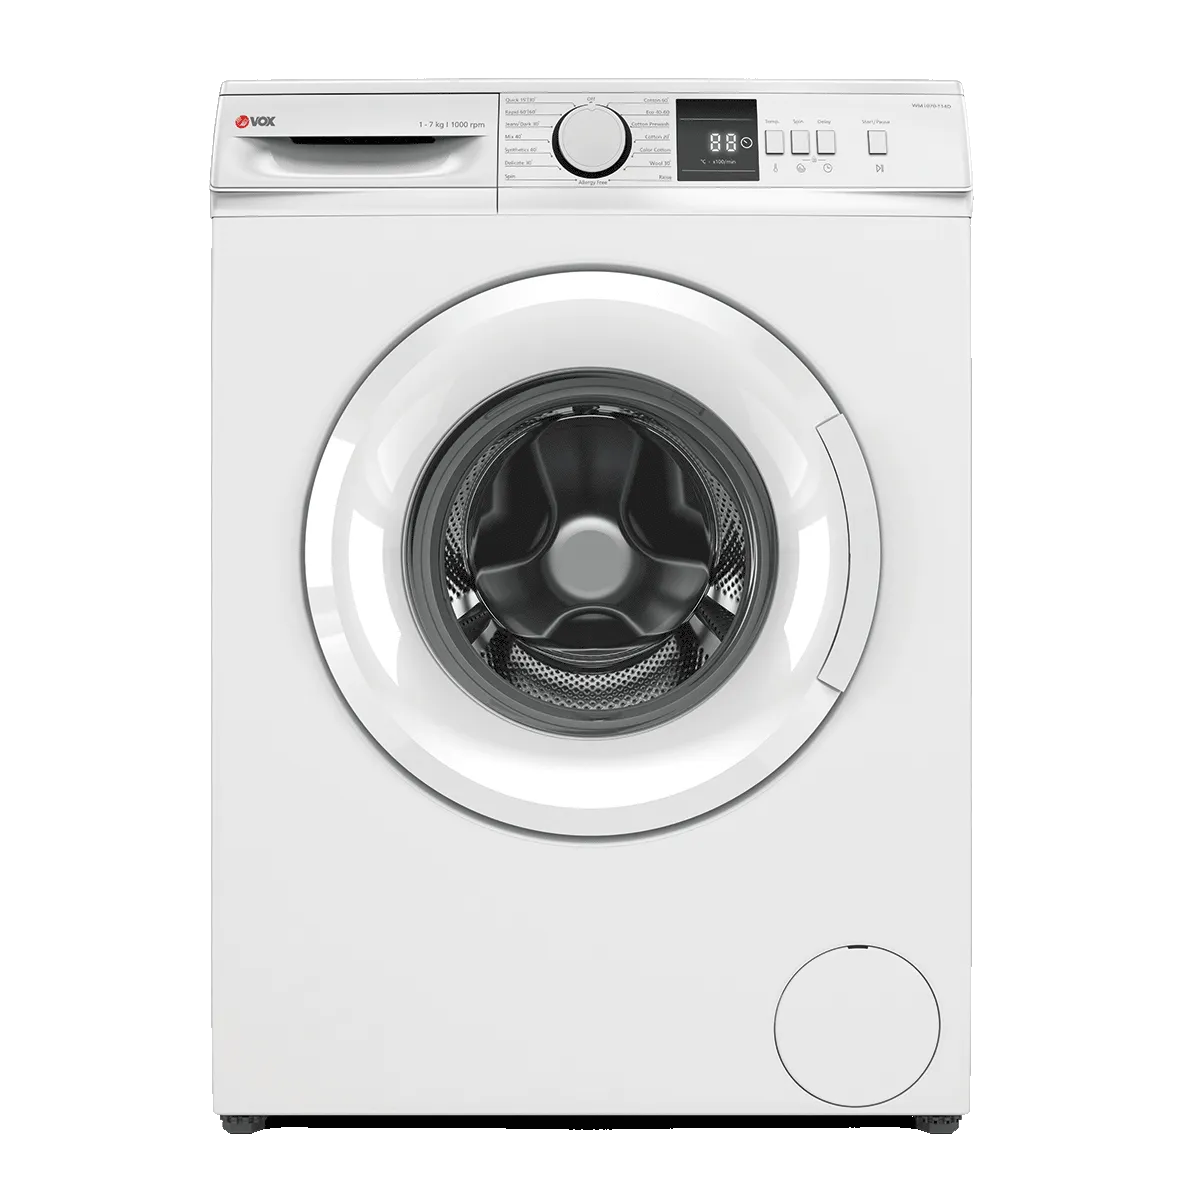 Washing machine WM1070-T14D 